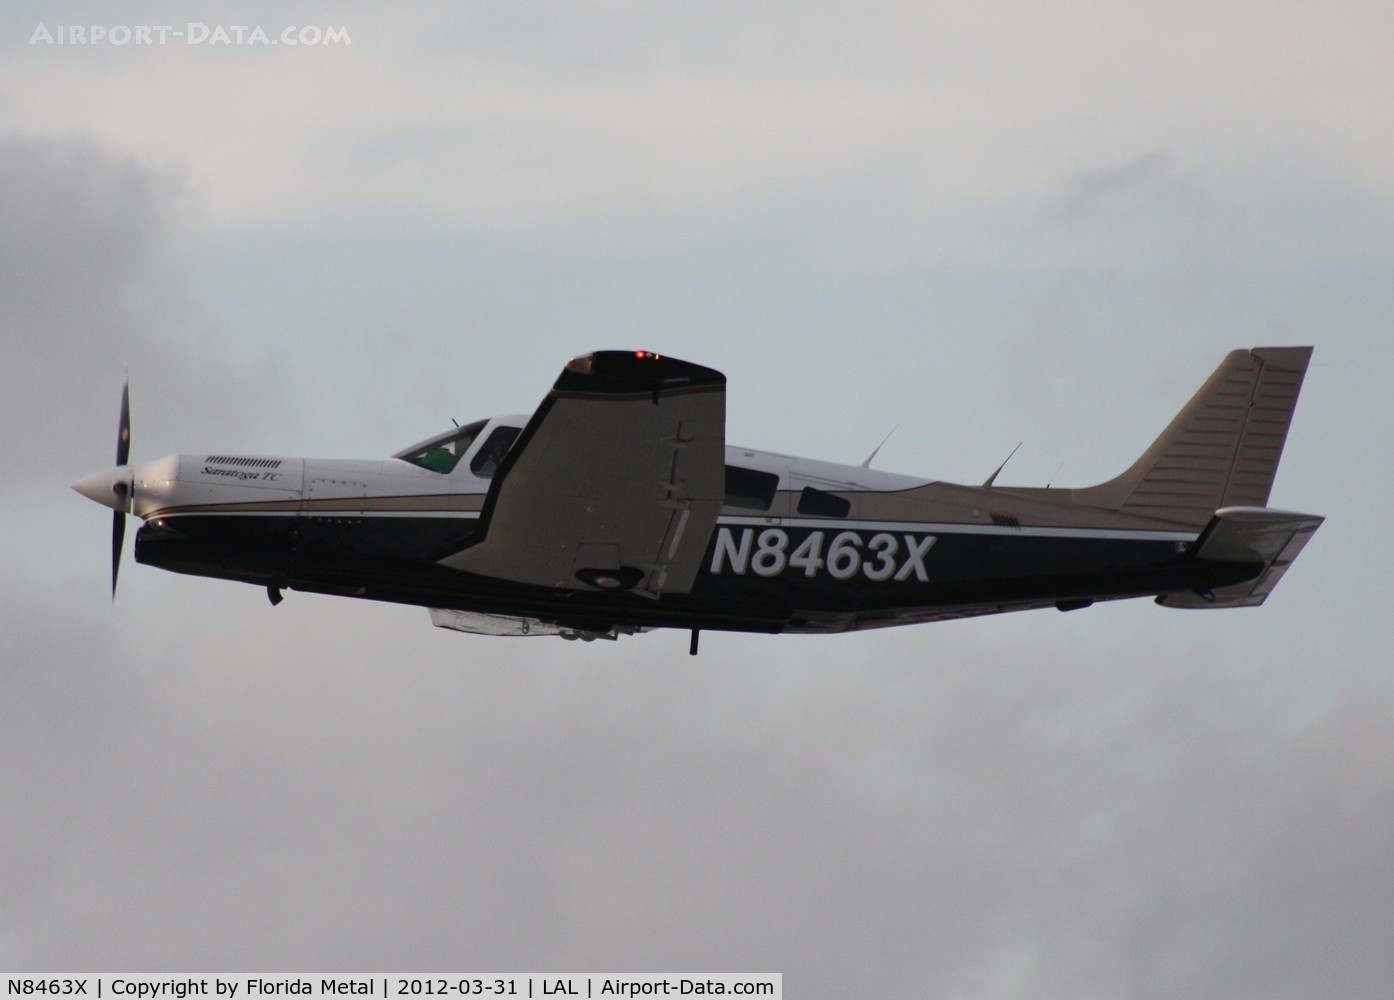 N8463X, 1981 Piper PA-32R-301T Turbo Saratoga C/N 32R-8229009, PA-32R-301T